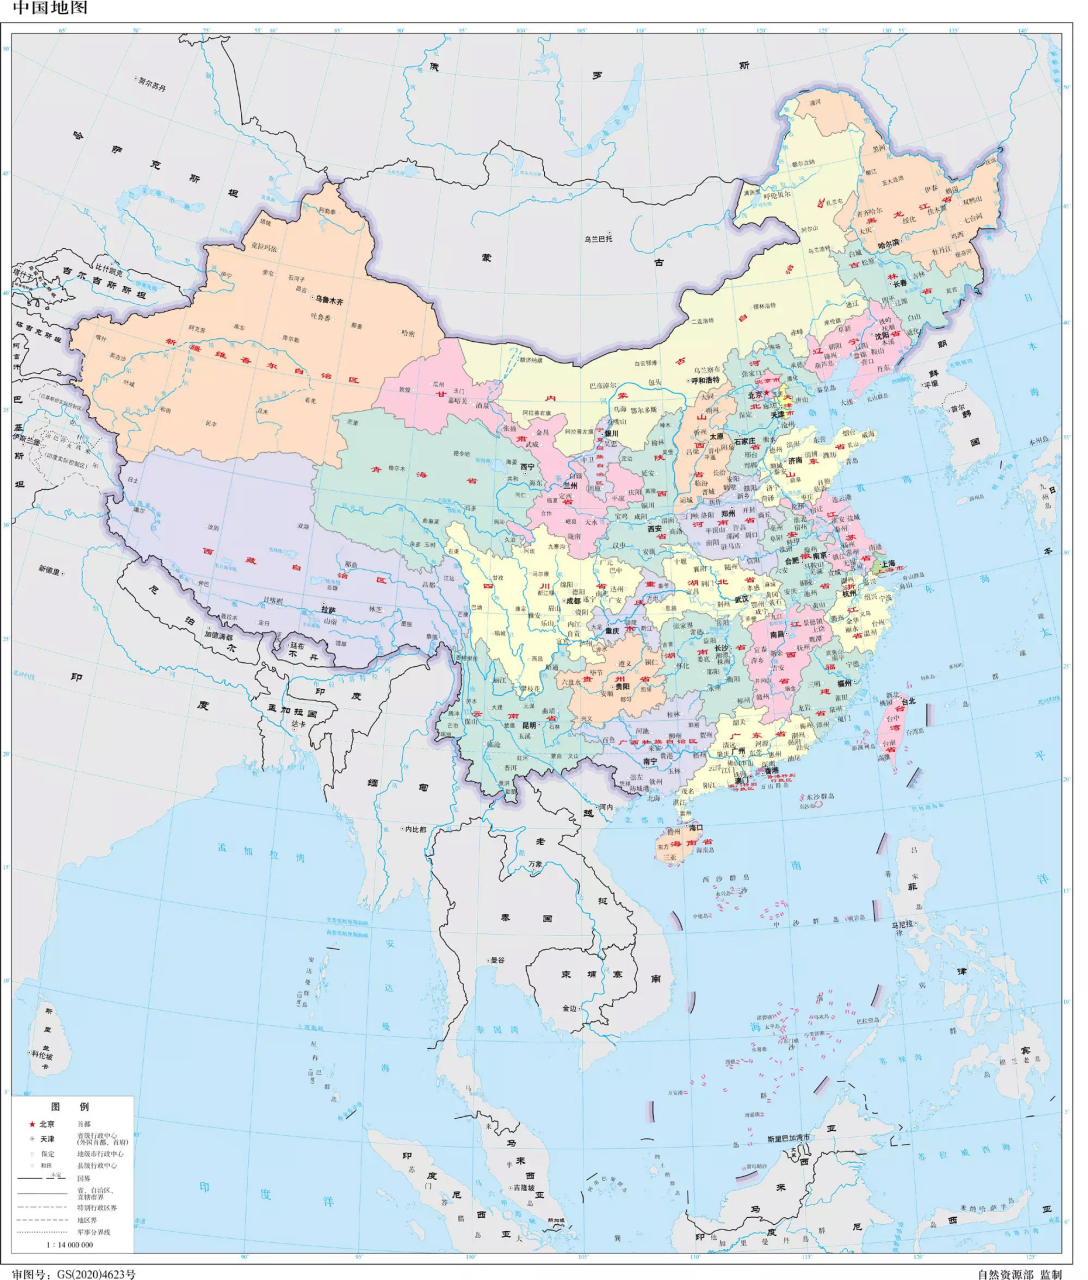 小来中国地图里面,找自己所在的位置了! 我在河南,你在哪里呢?